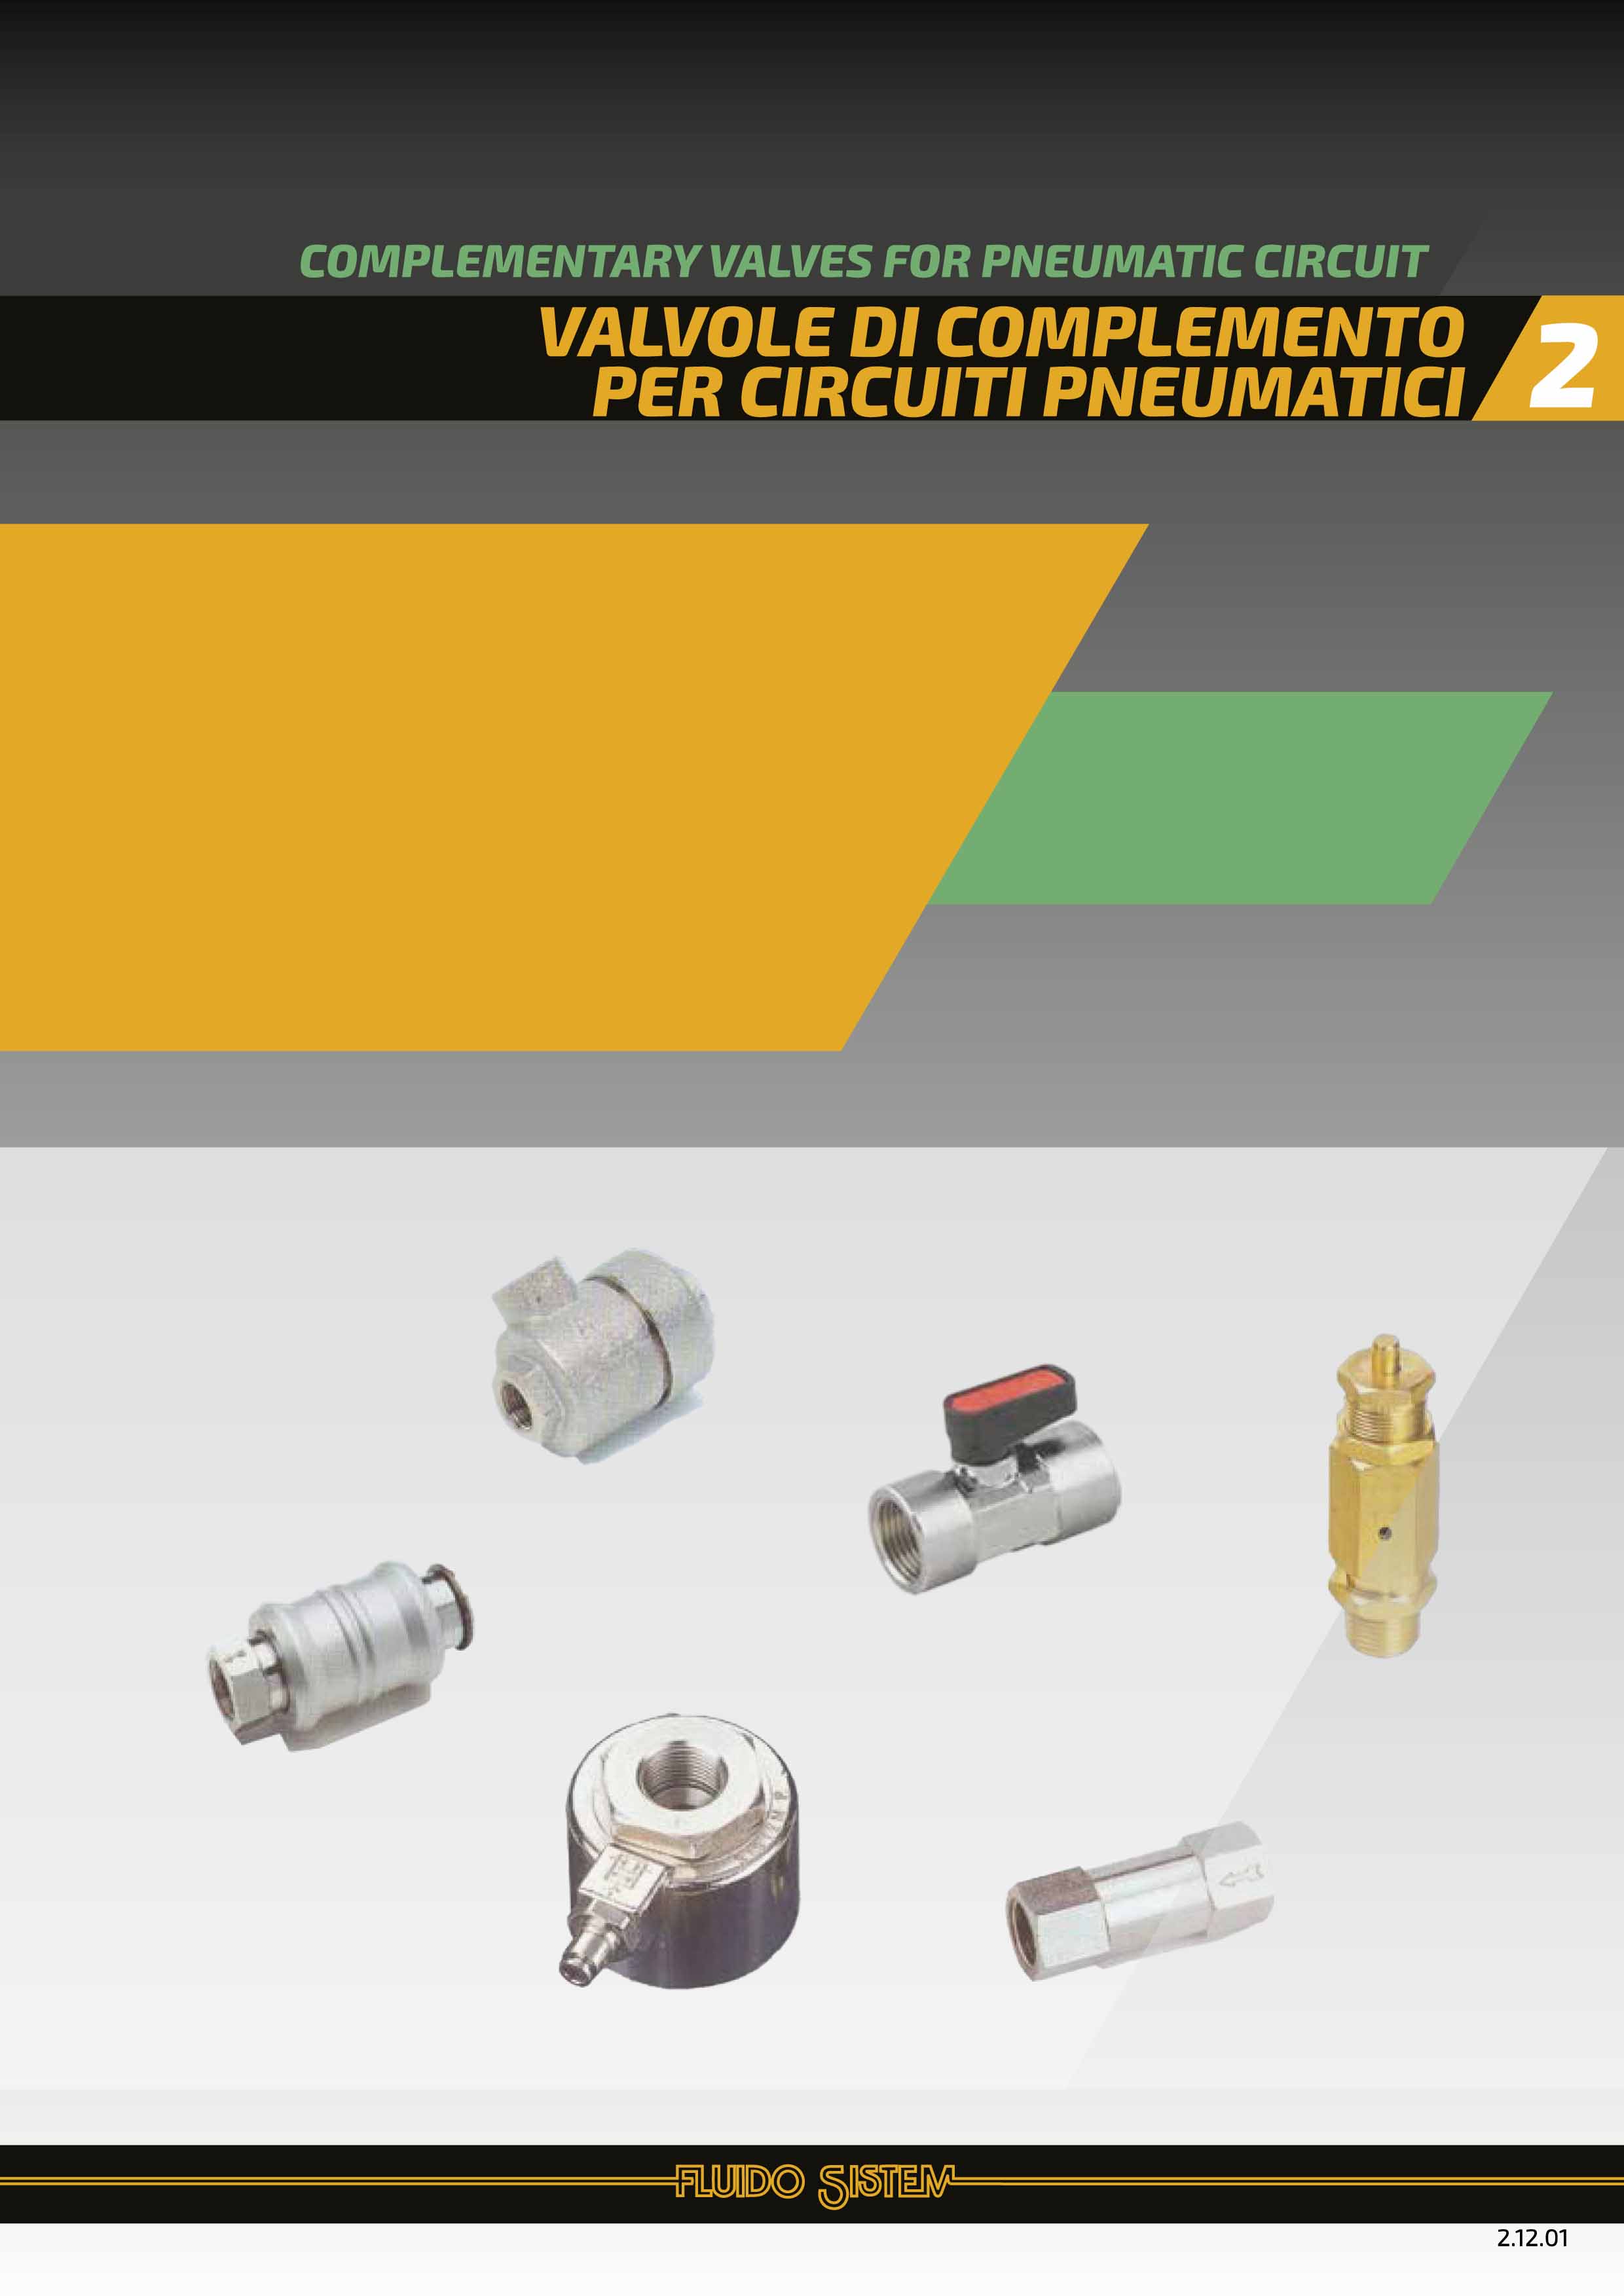 Valvole di complemento per circuiti pneumatici - Catalogo Fluido